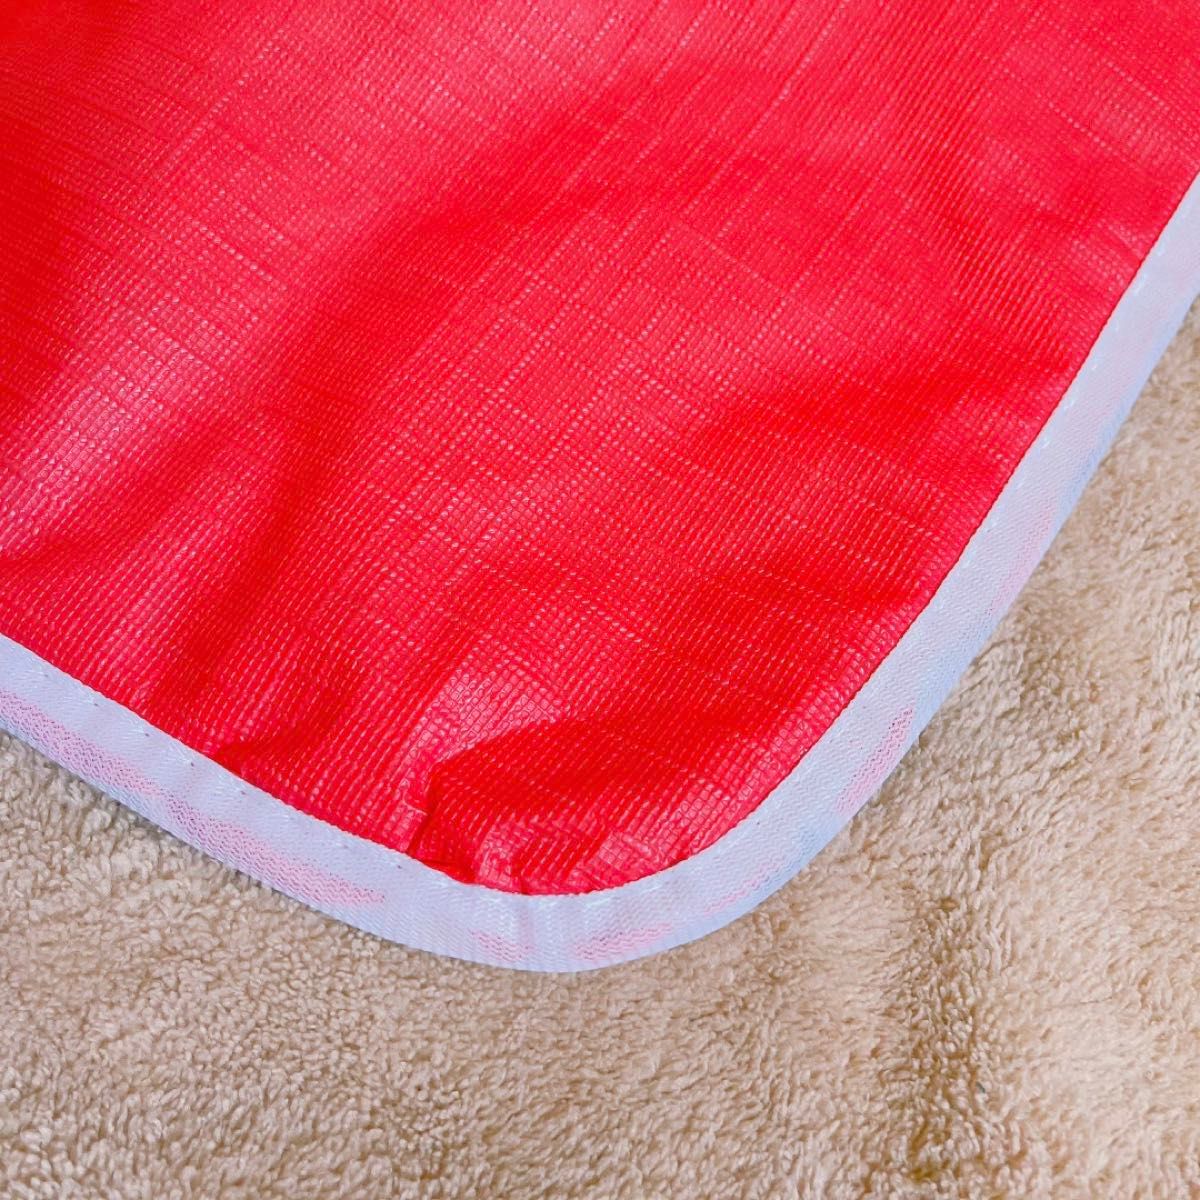 防水シーツ 防水マット 介護 おねしょシーツ シニア 尿漏れ対策 丸洗い可能 ペット 子供 生理 寝具汚れ ペット ベビー おむつ